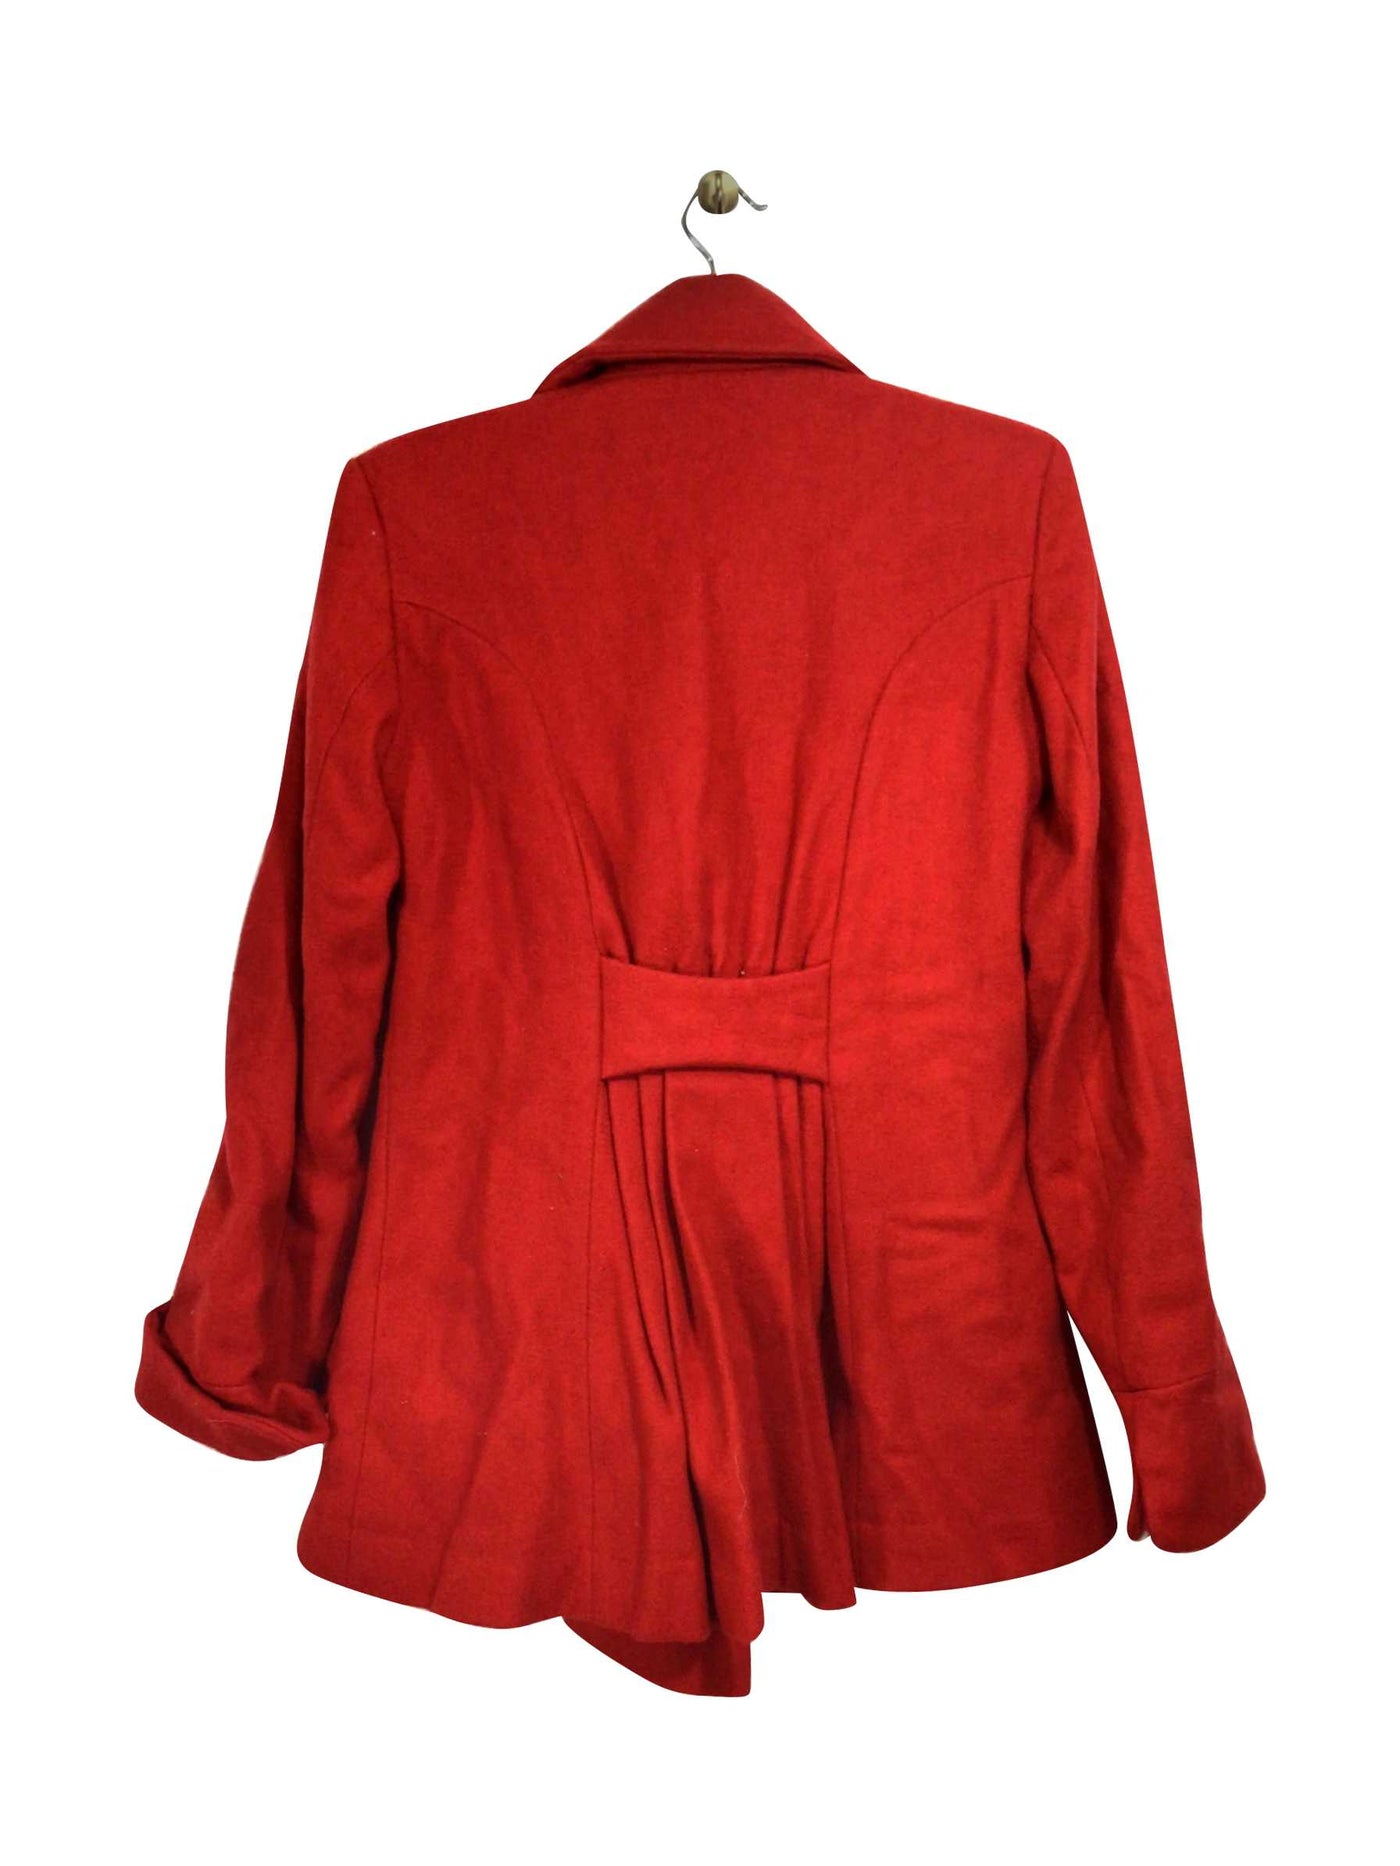 NEWPORT NEWS Regular fit Coat in Red - Size 4 | 23.39 $ KOOP